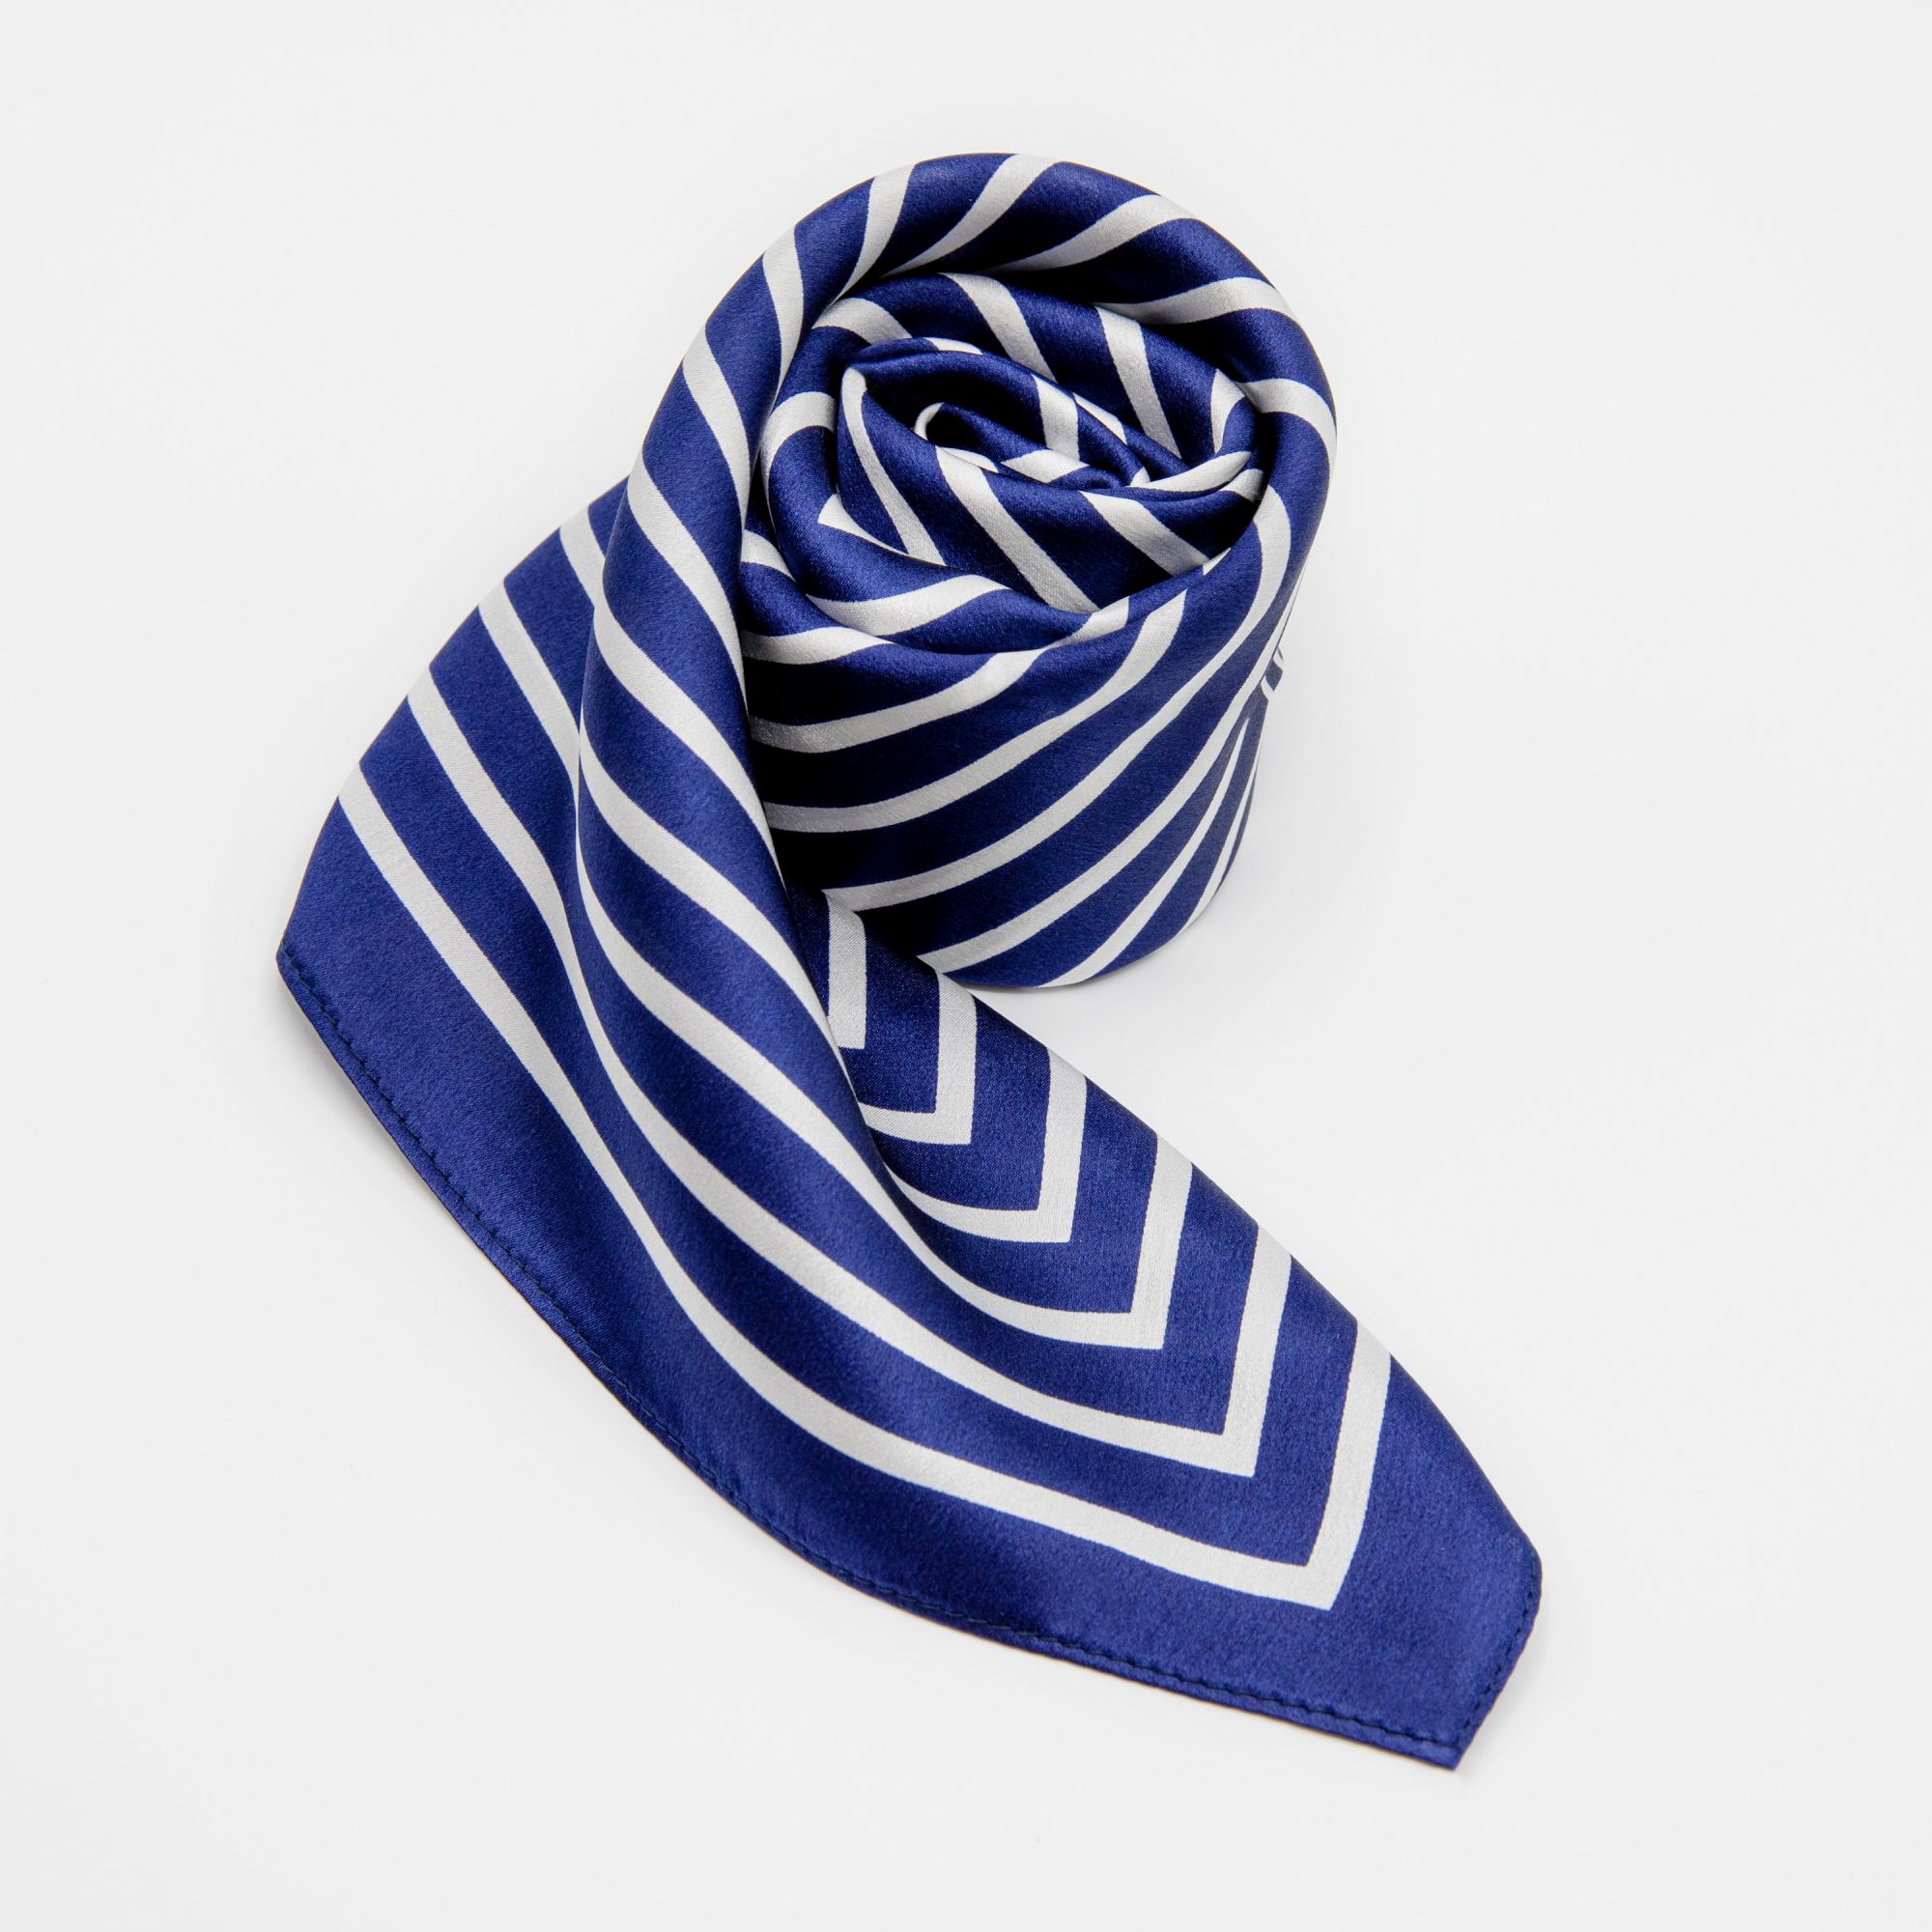 LEEZ Blue & White Stripe Print Square Silk Scarf